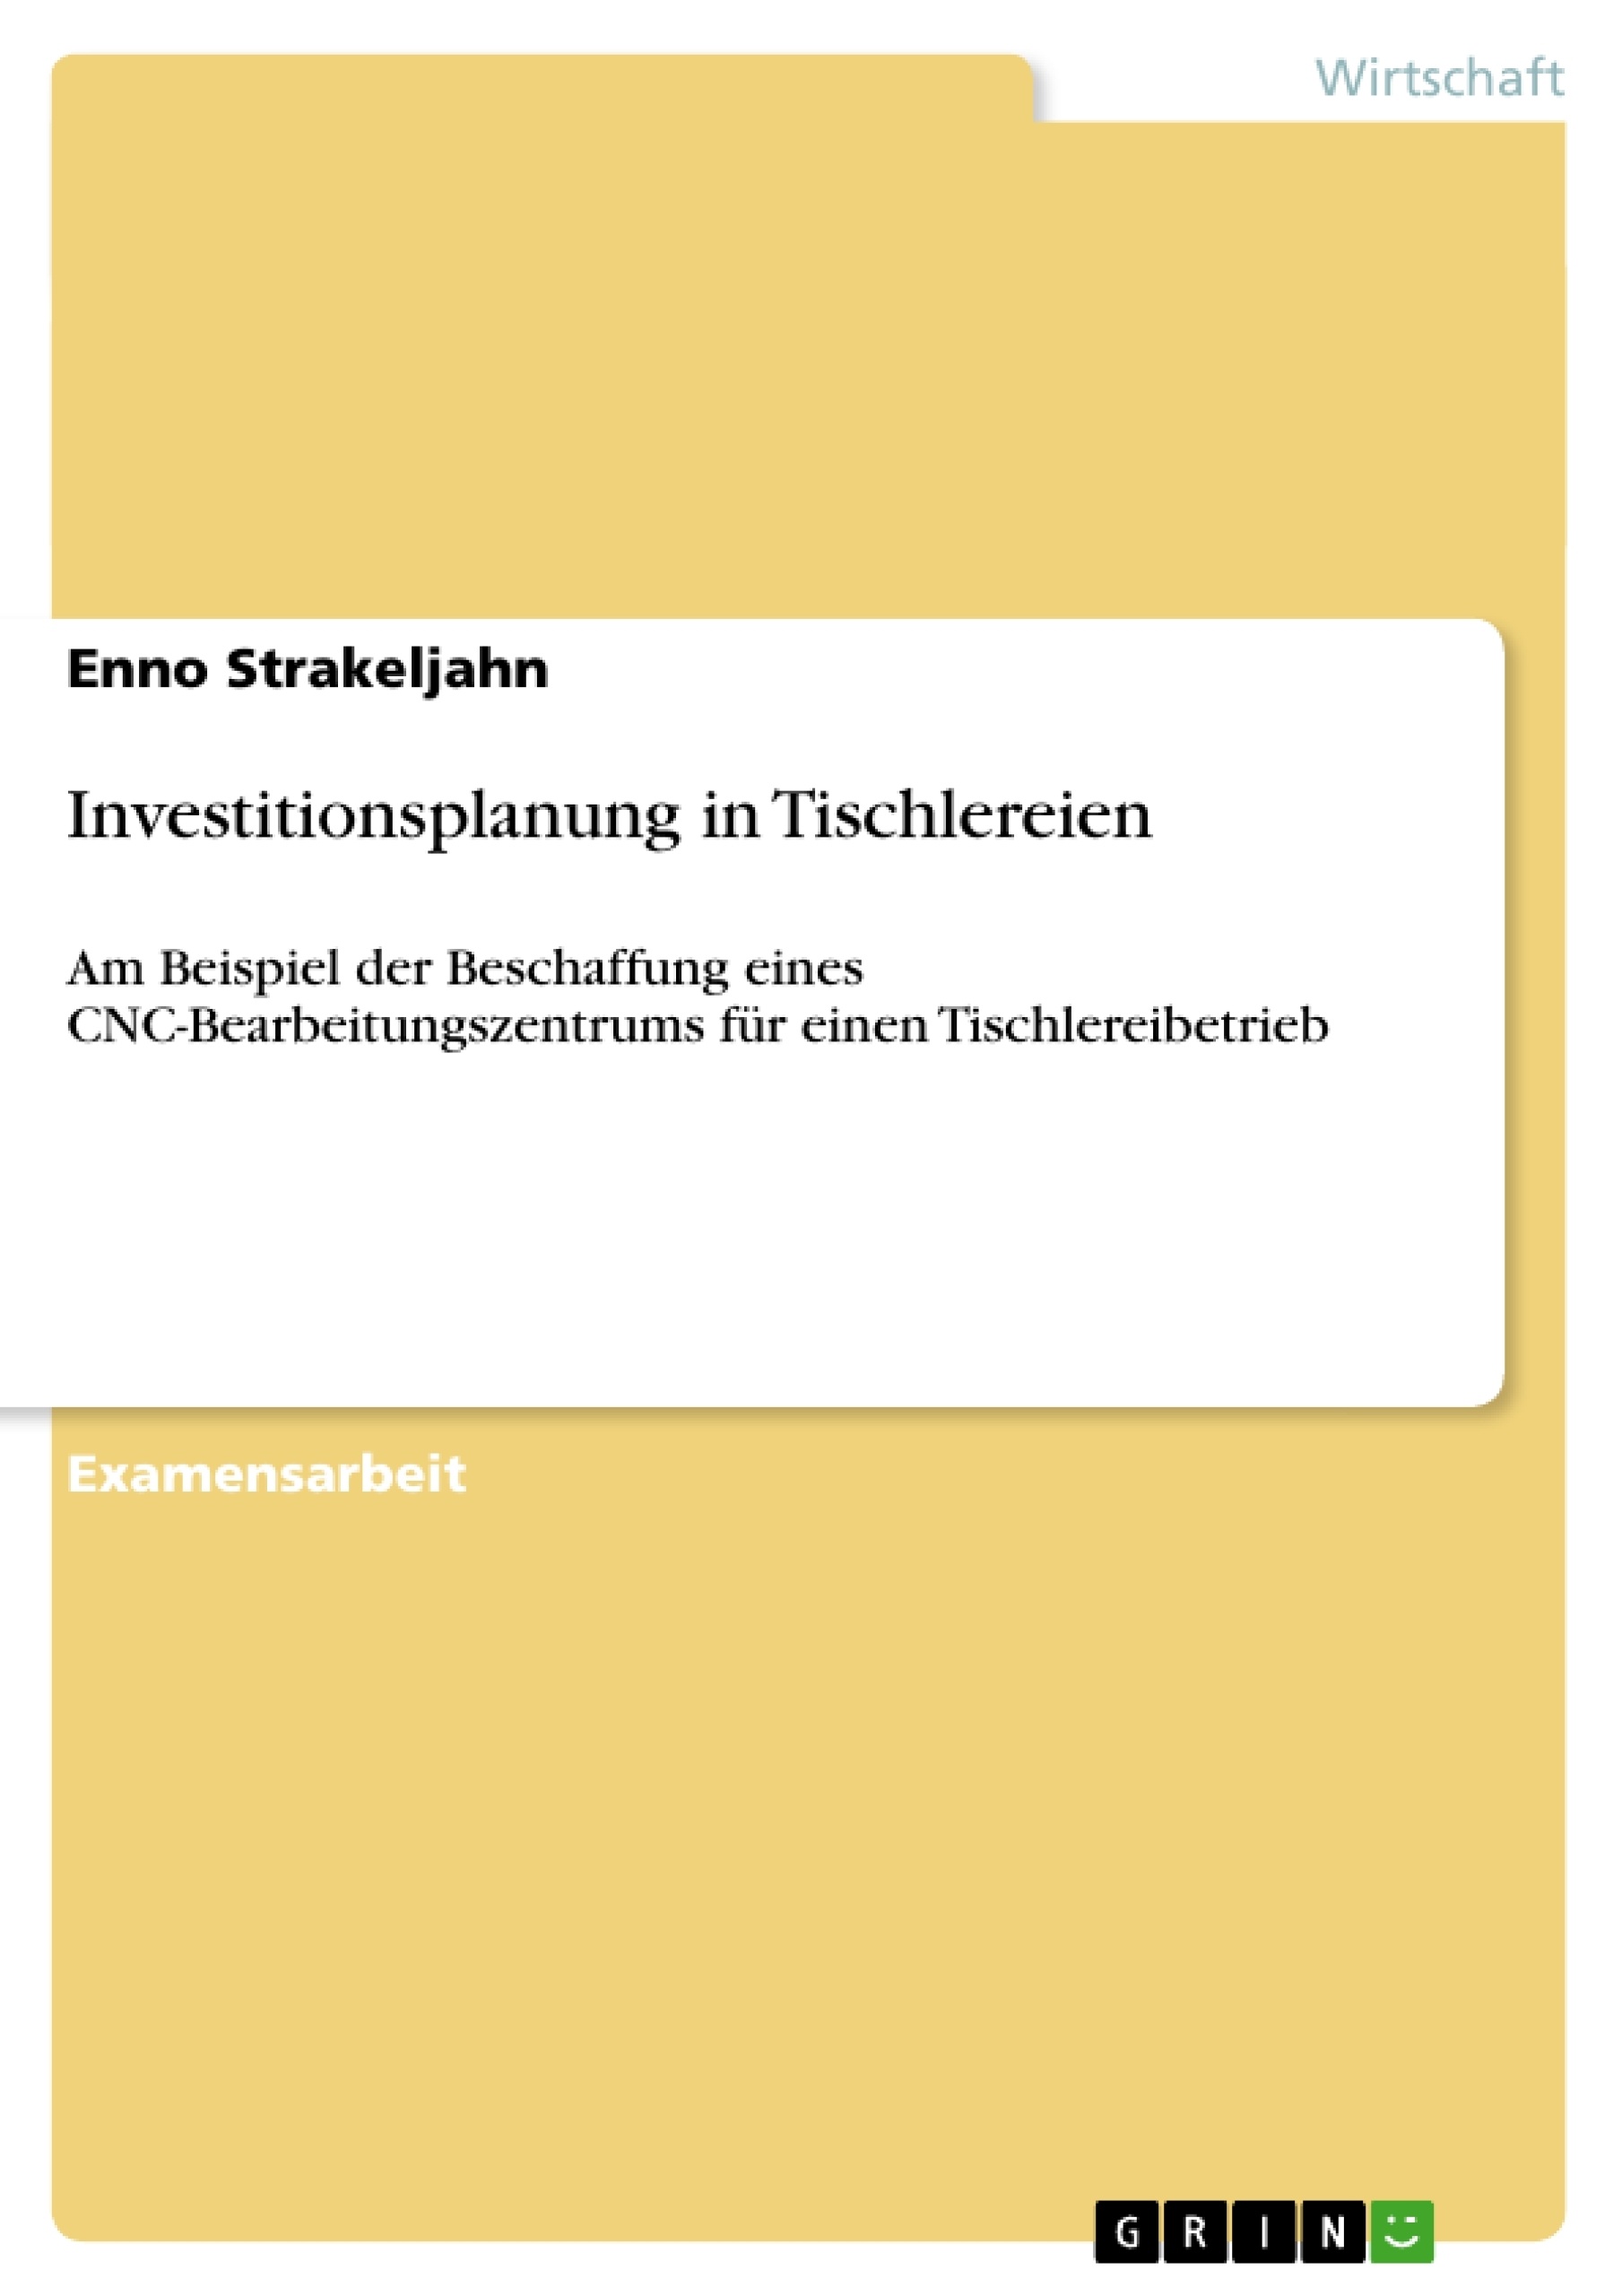 Título: Investitionsplanung in Tischlereien 